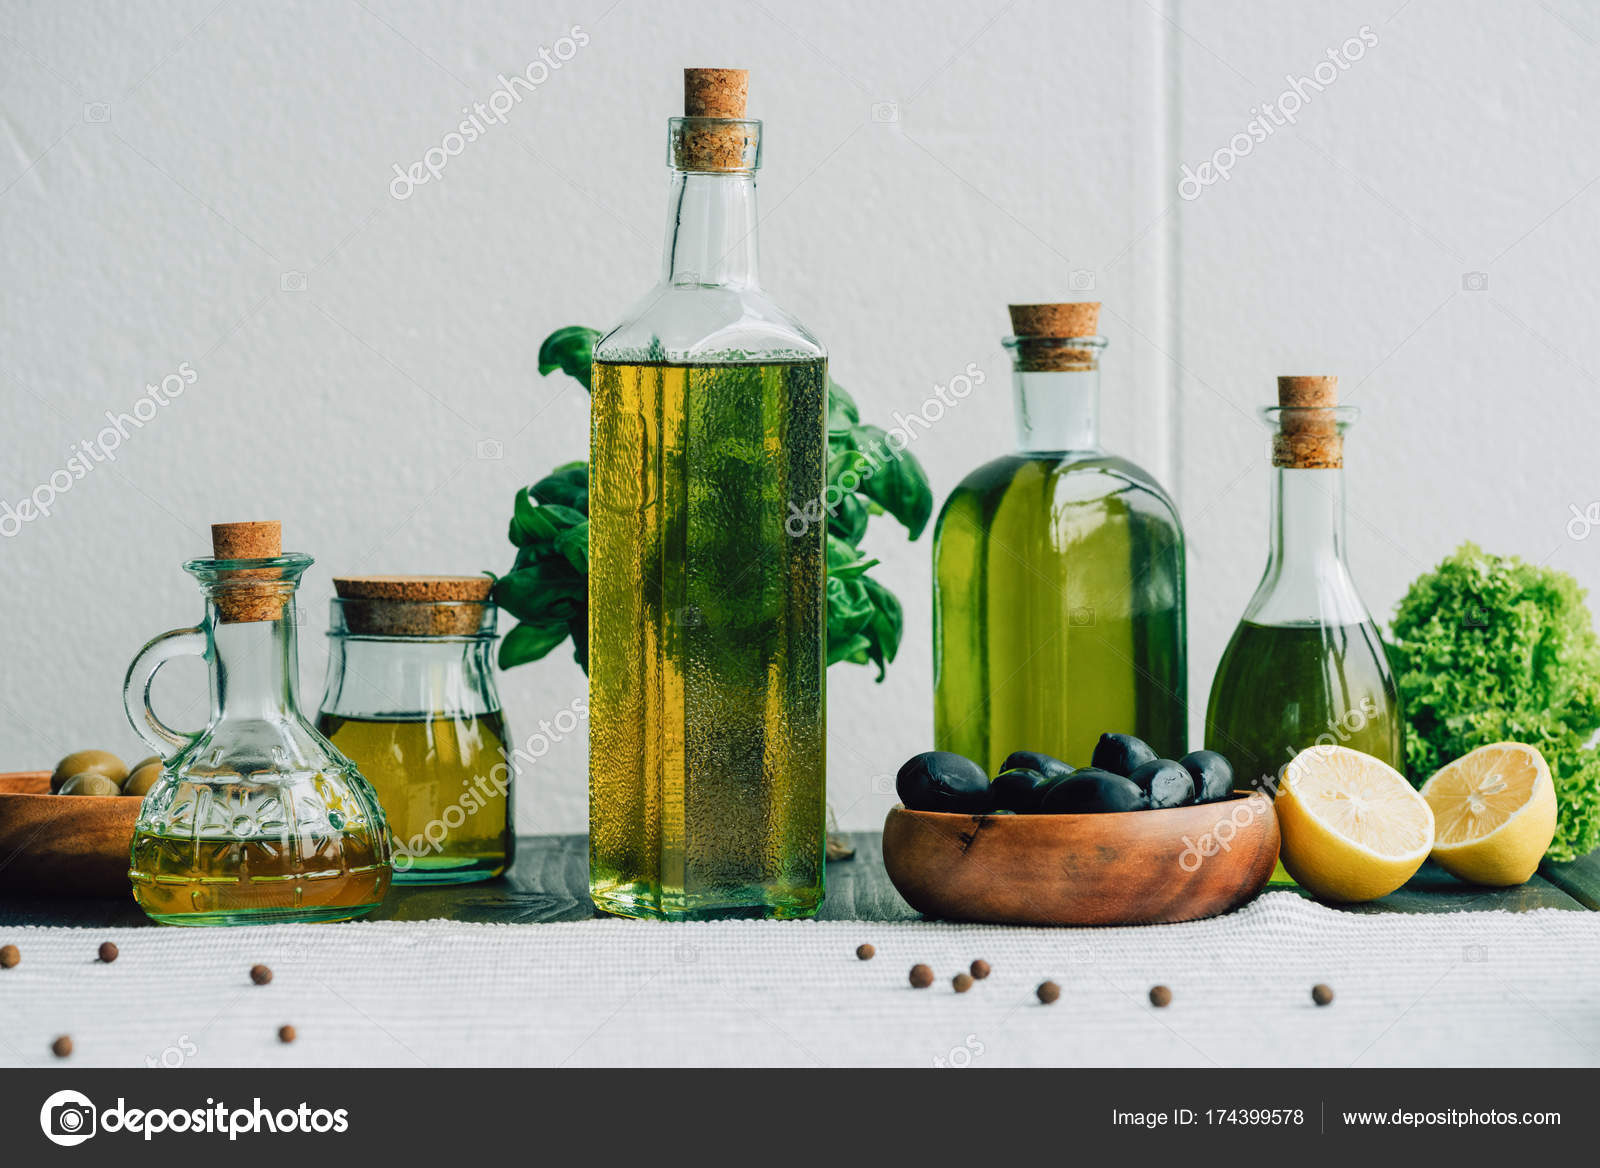 Decorative Olive Oil Bottles With Vegetables Olive Oil Bottles